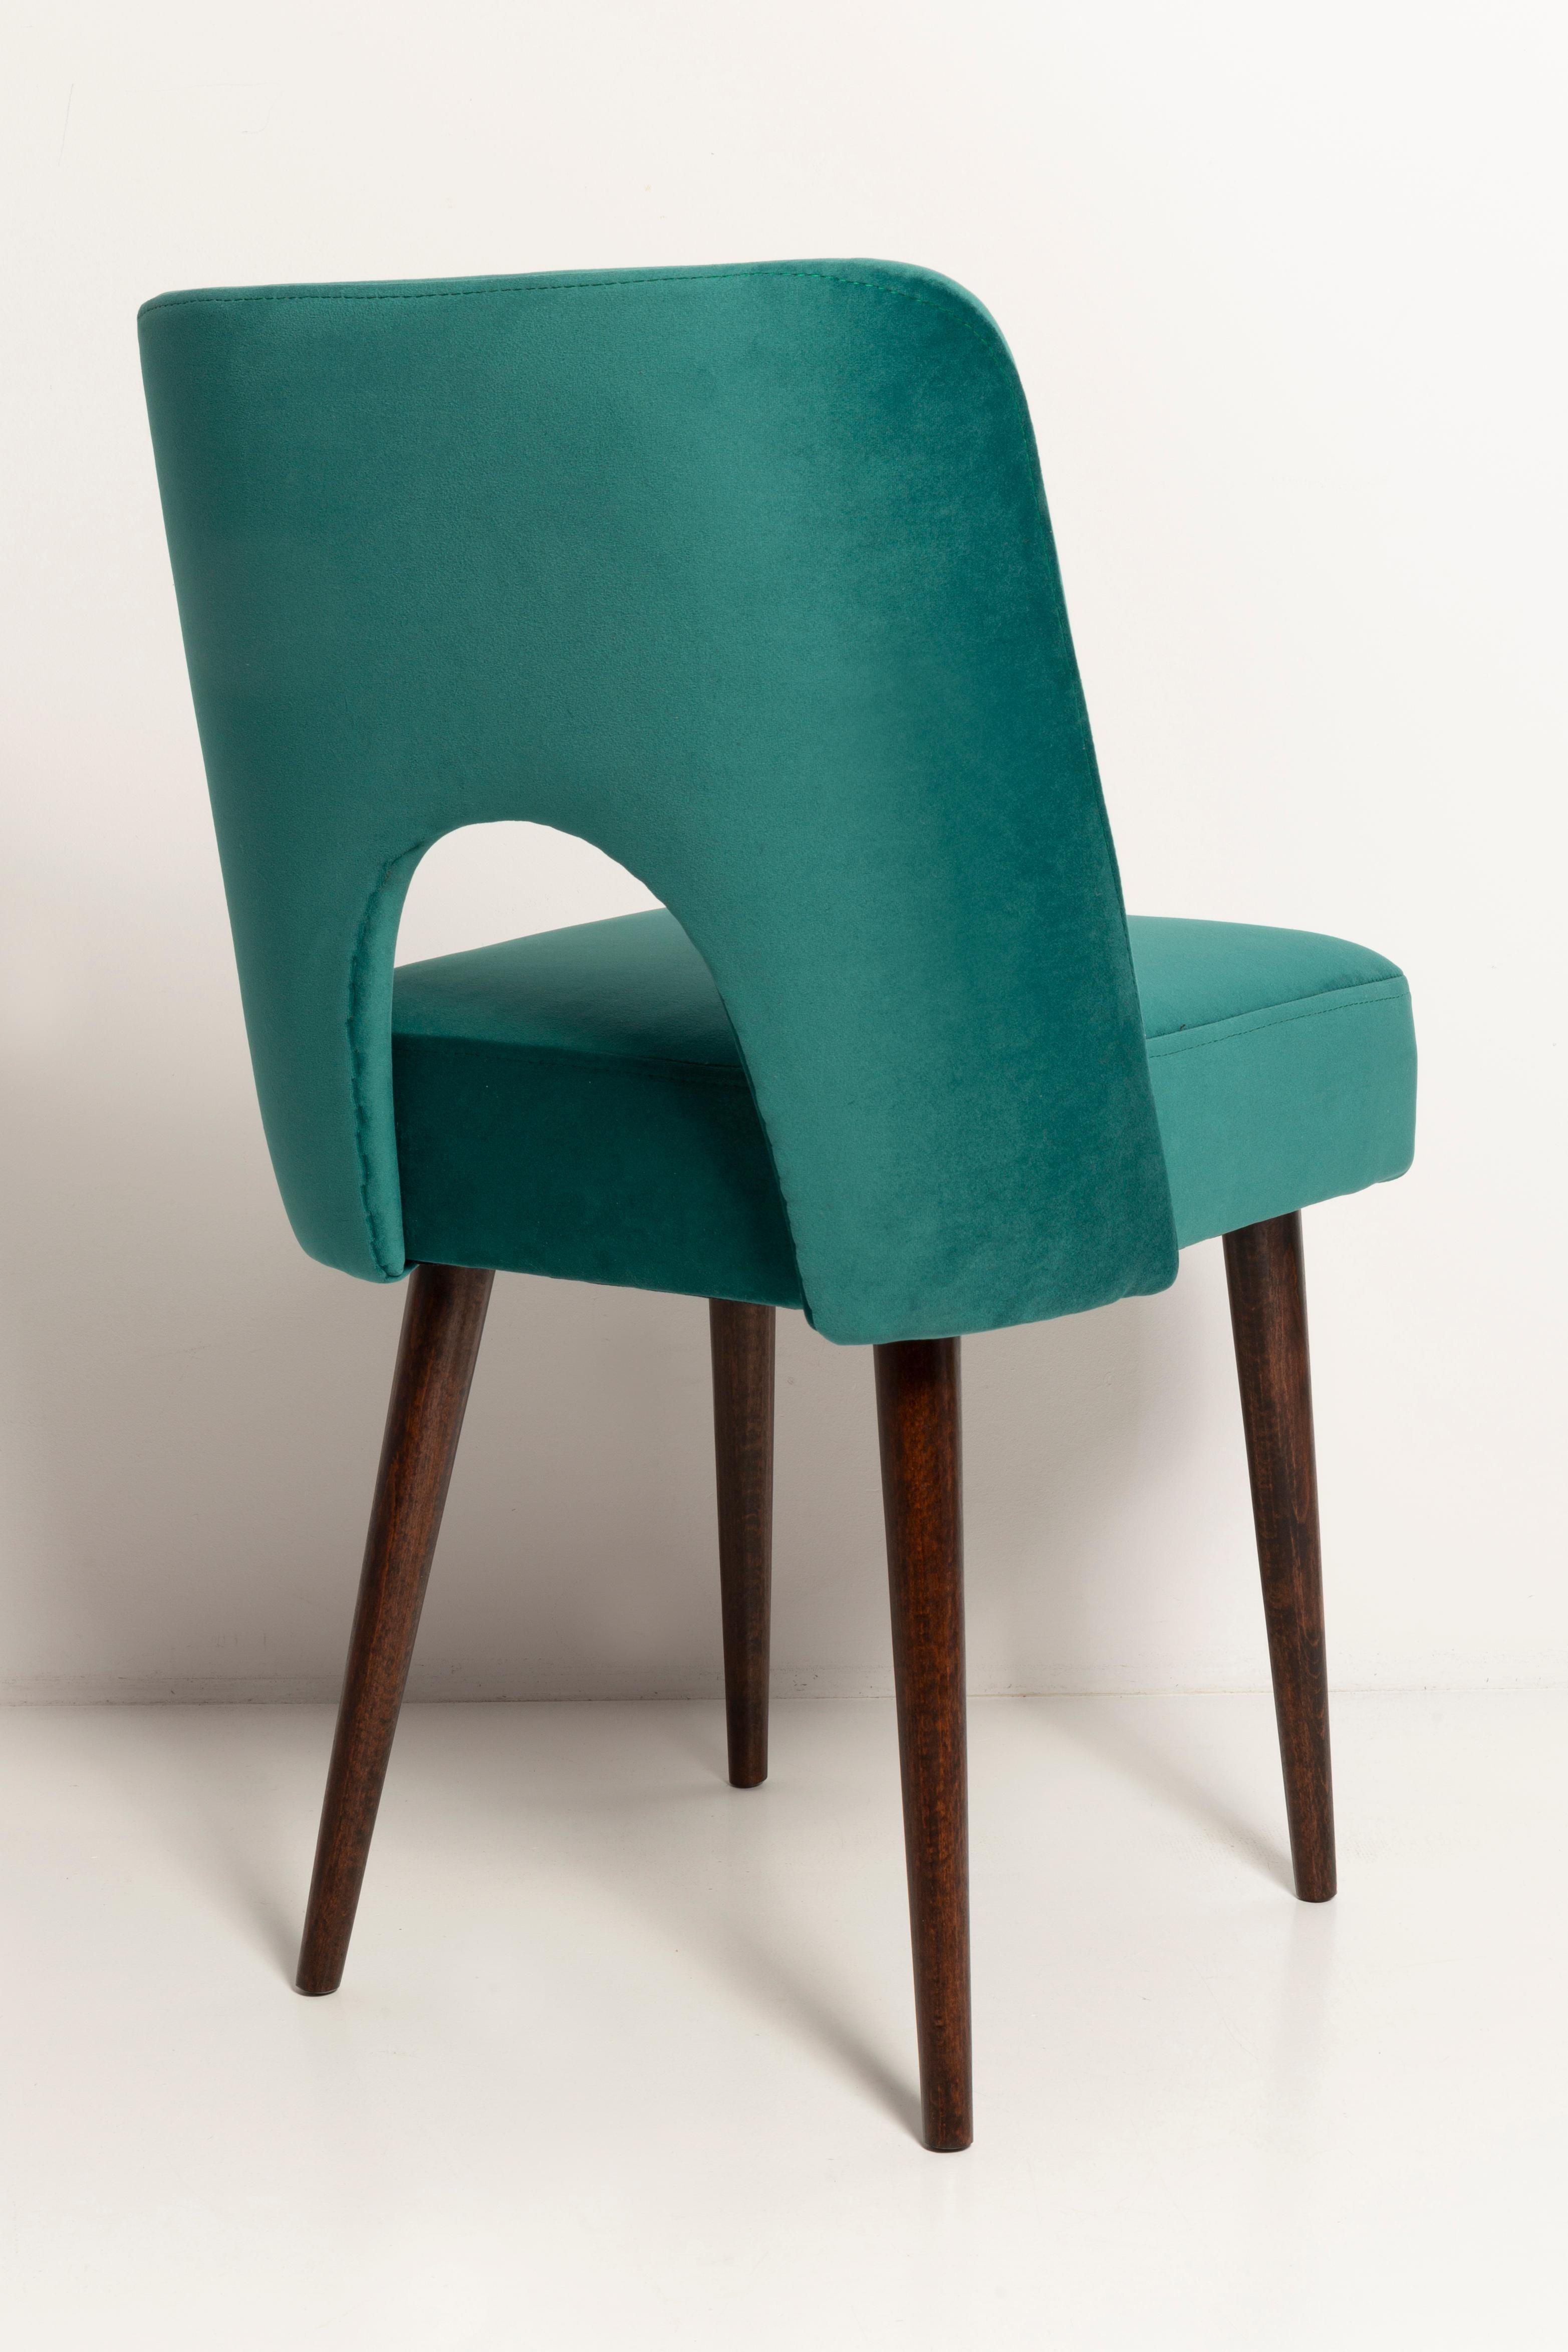 Dark Green Velvet 'Shell' Chair, Europe, 1960s For Sale 2